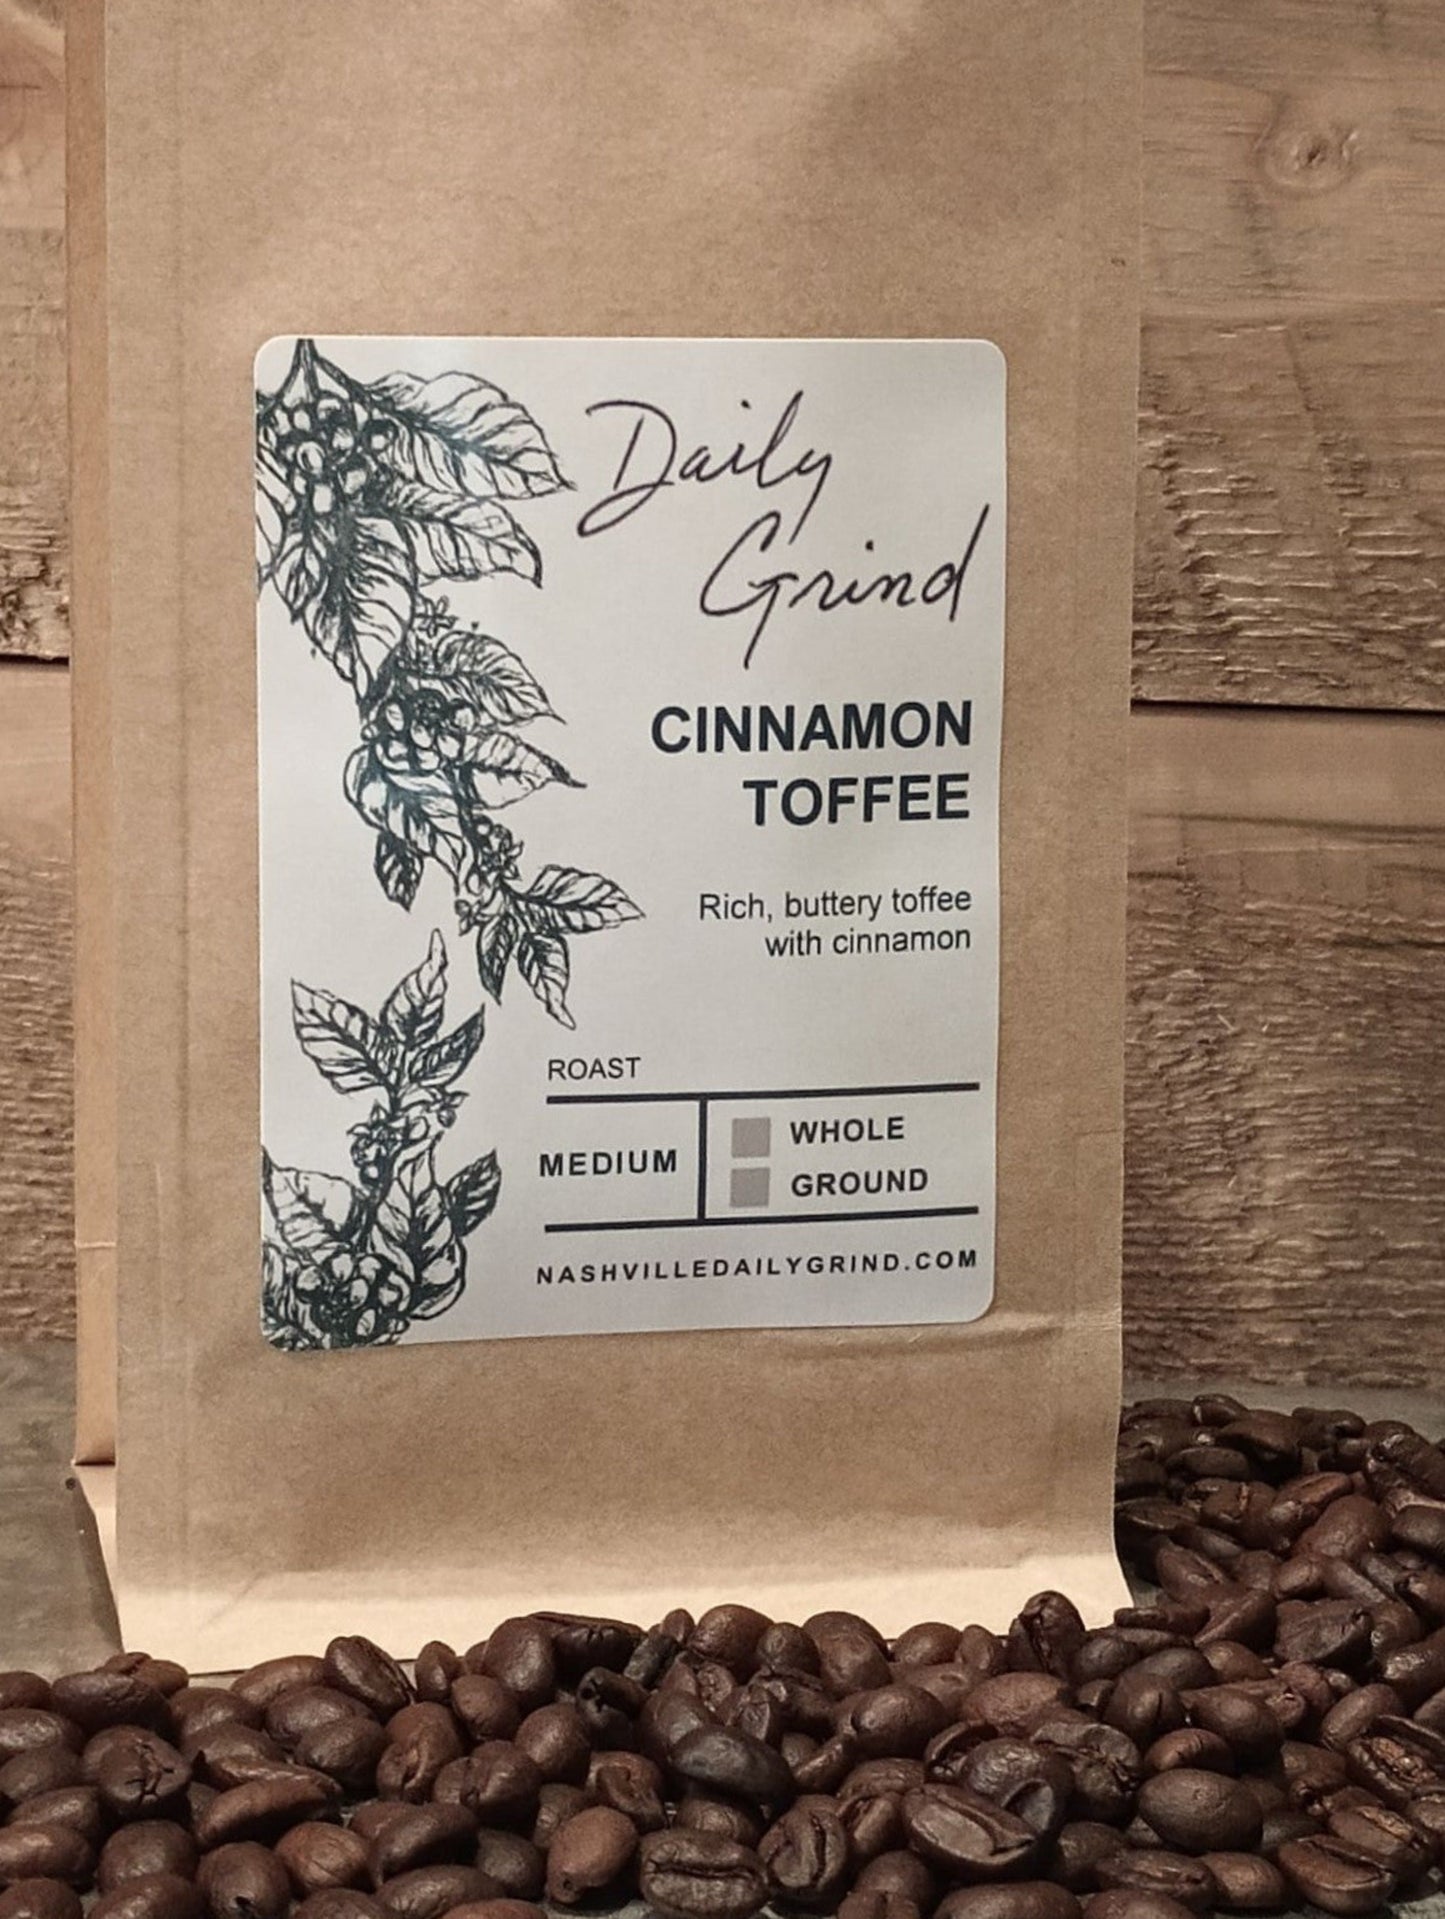 Cinnamon Toffee